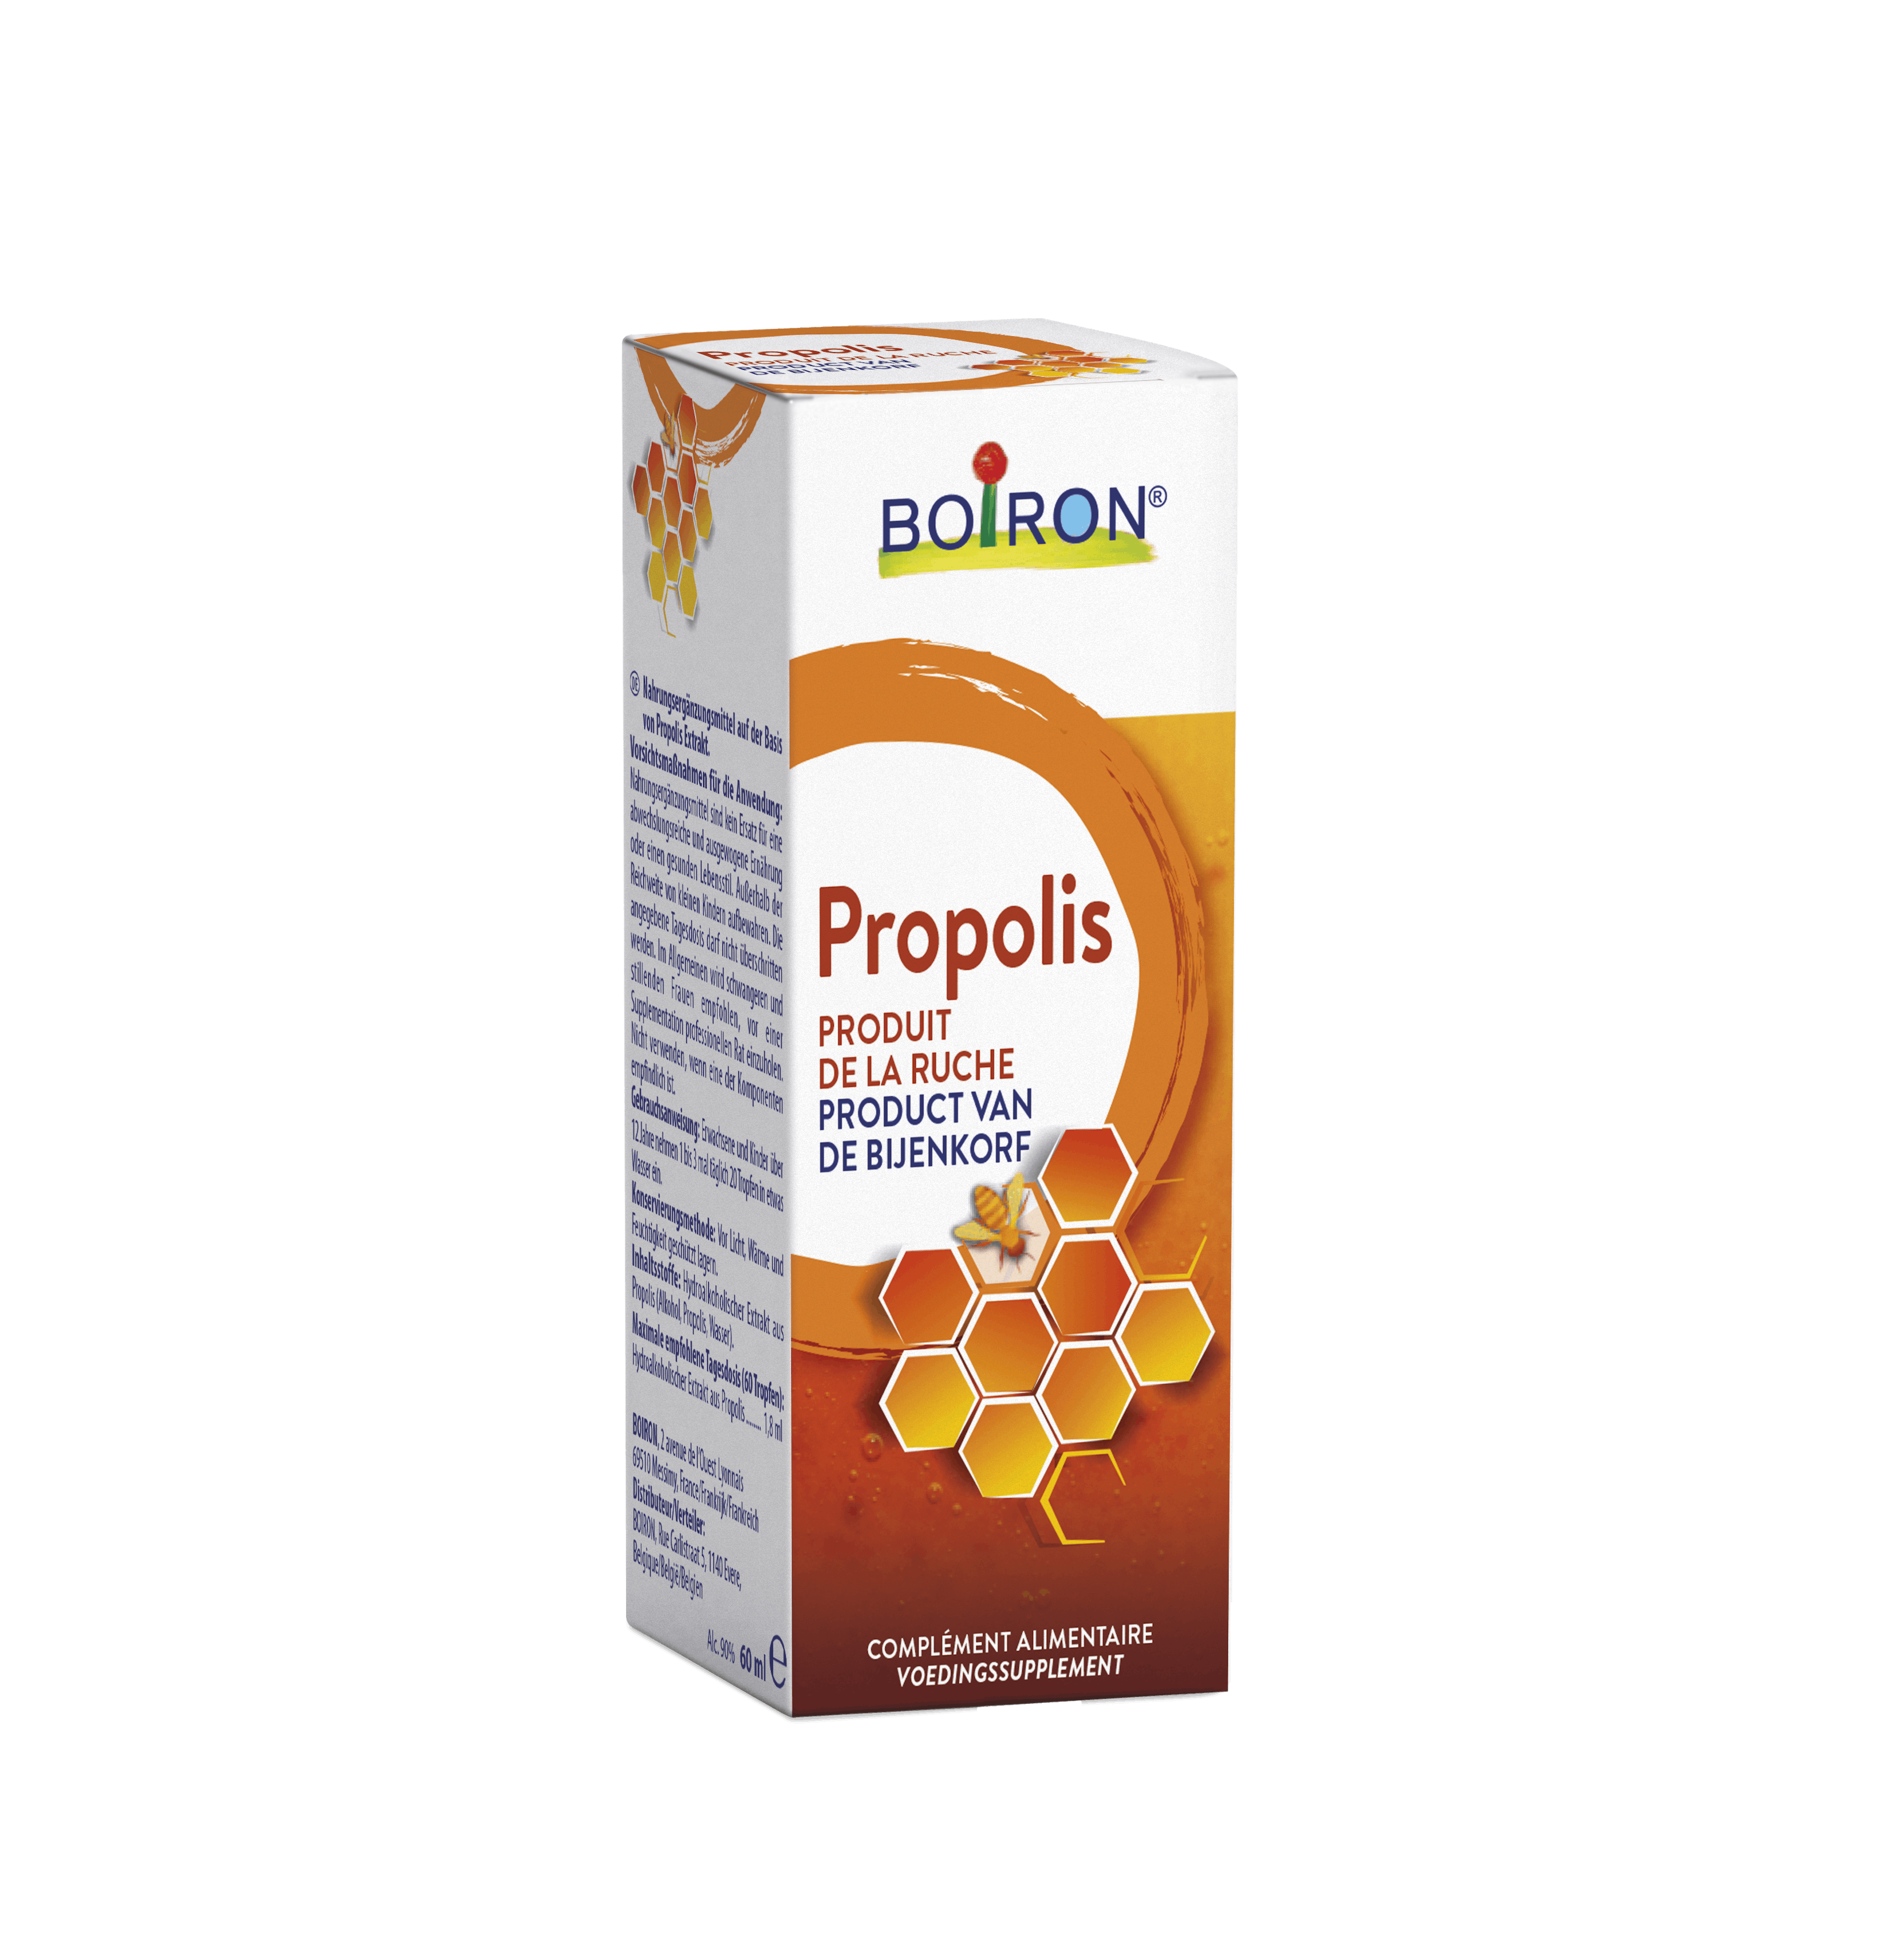 Propolis - Product van de Bijenkorf | Boiron Nr.1 in de homeopathie